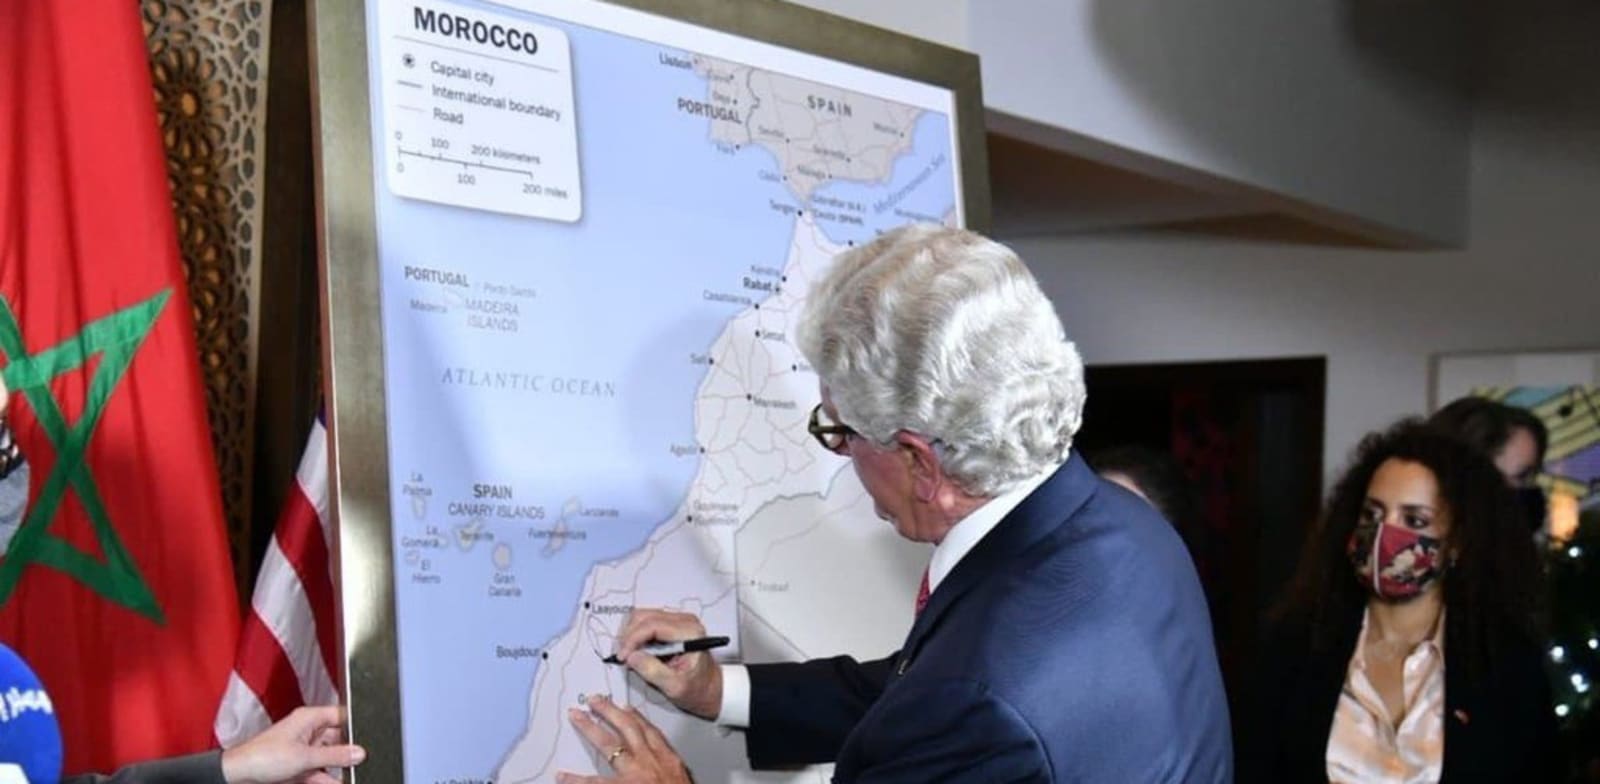 שגריר ארה"ב במרוקו חותם על המפה החדשה שבה סהרה המערבית מסופחת למרוקו / צילום: Moroccan  Diplomacy